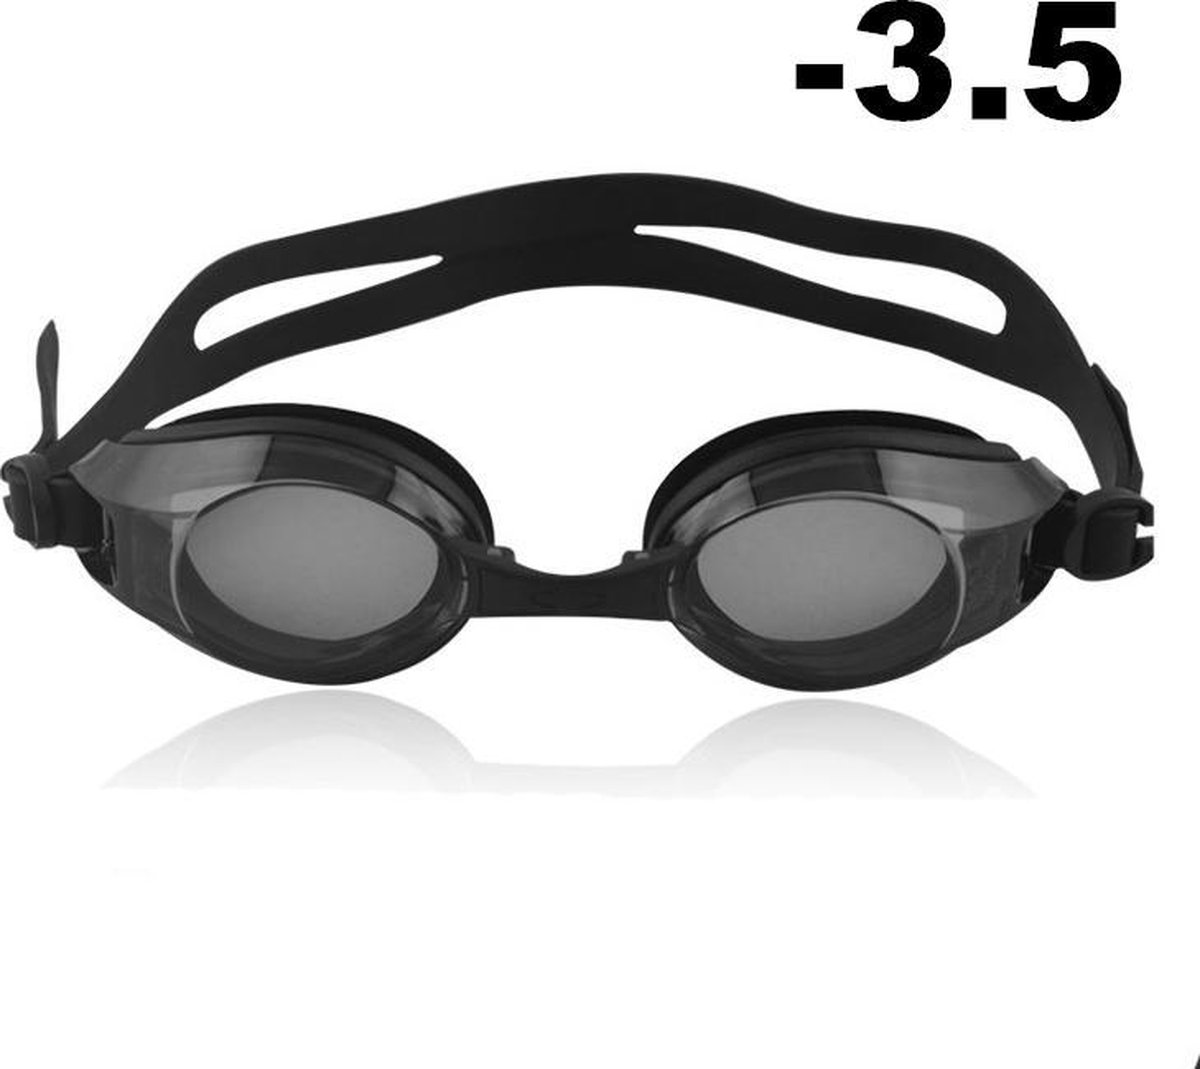 Zwembril op sterkte - myopia (-3.5)